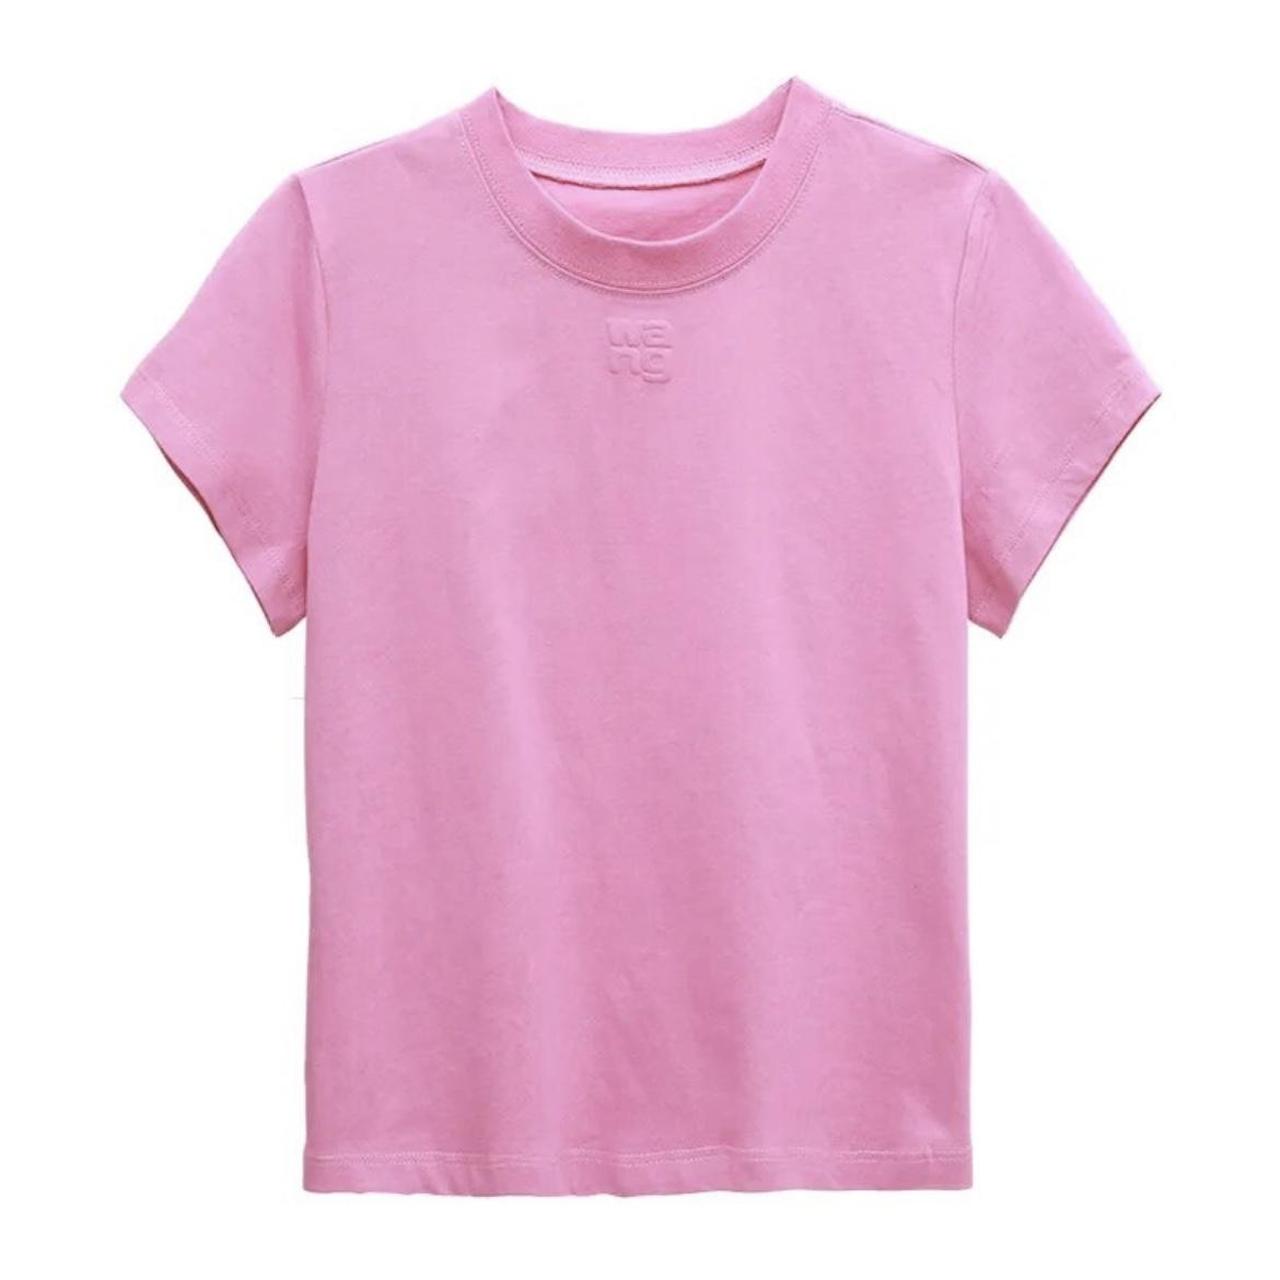 Pink Custom Alexander WANG top size S *never worn... - Depop